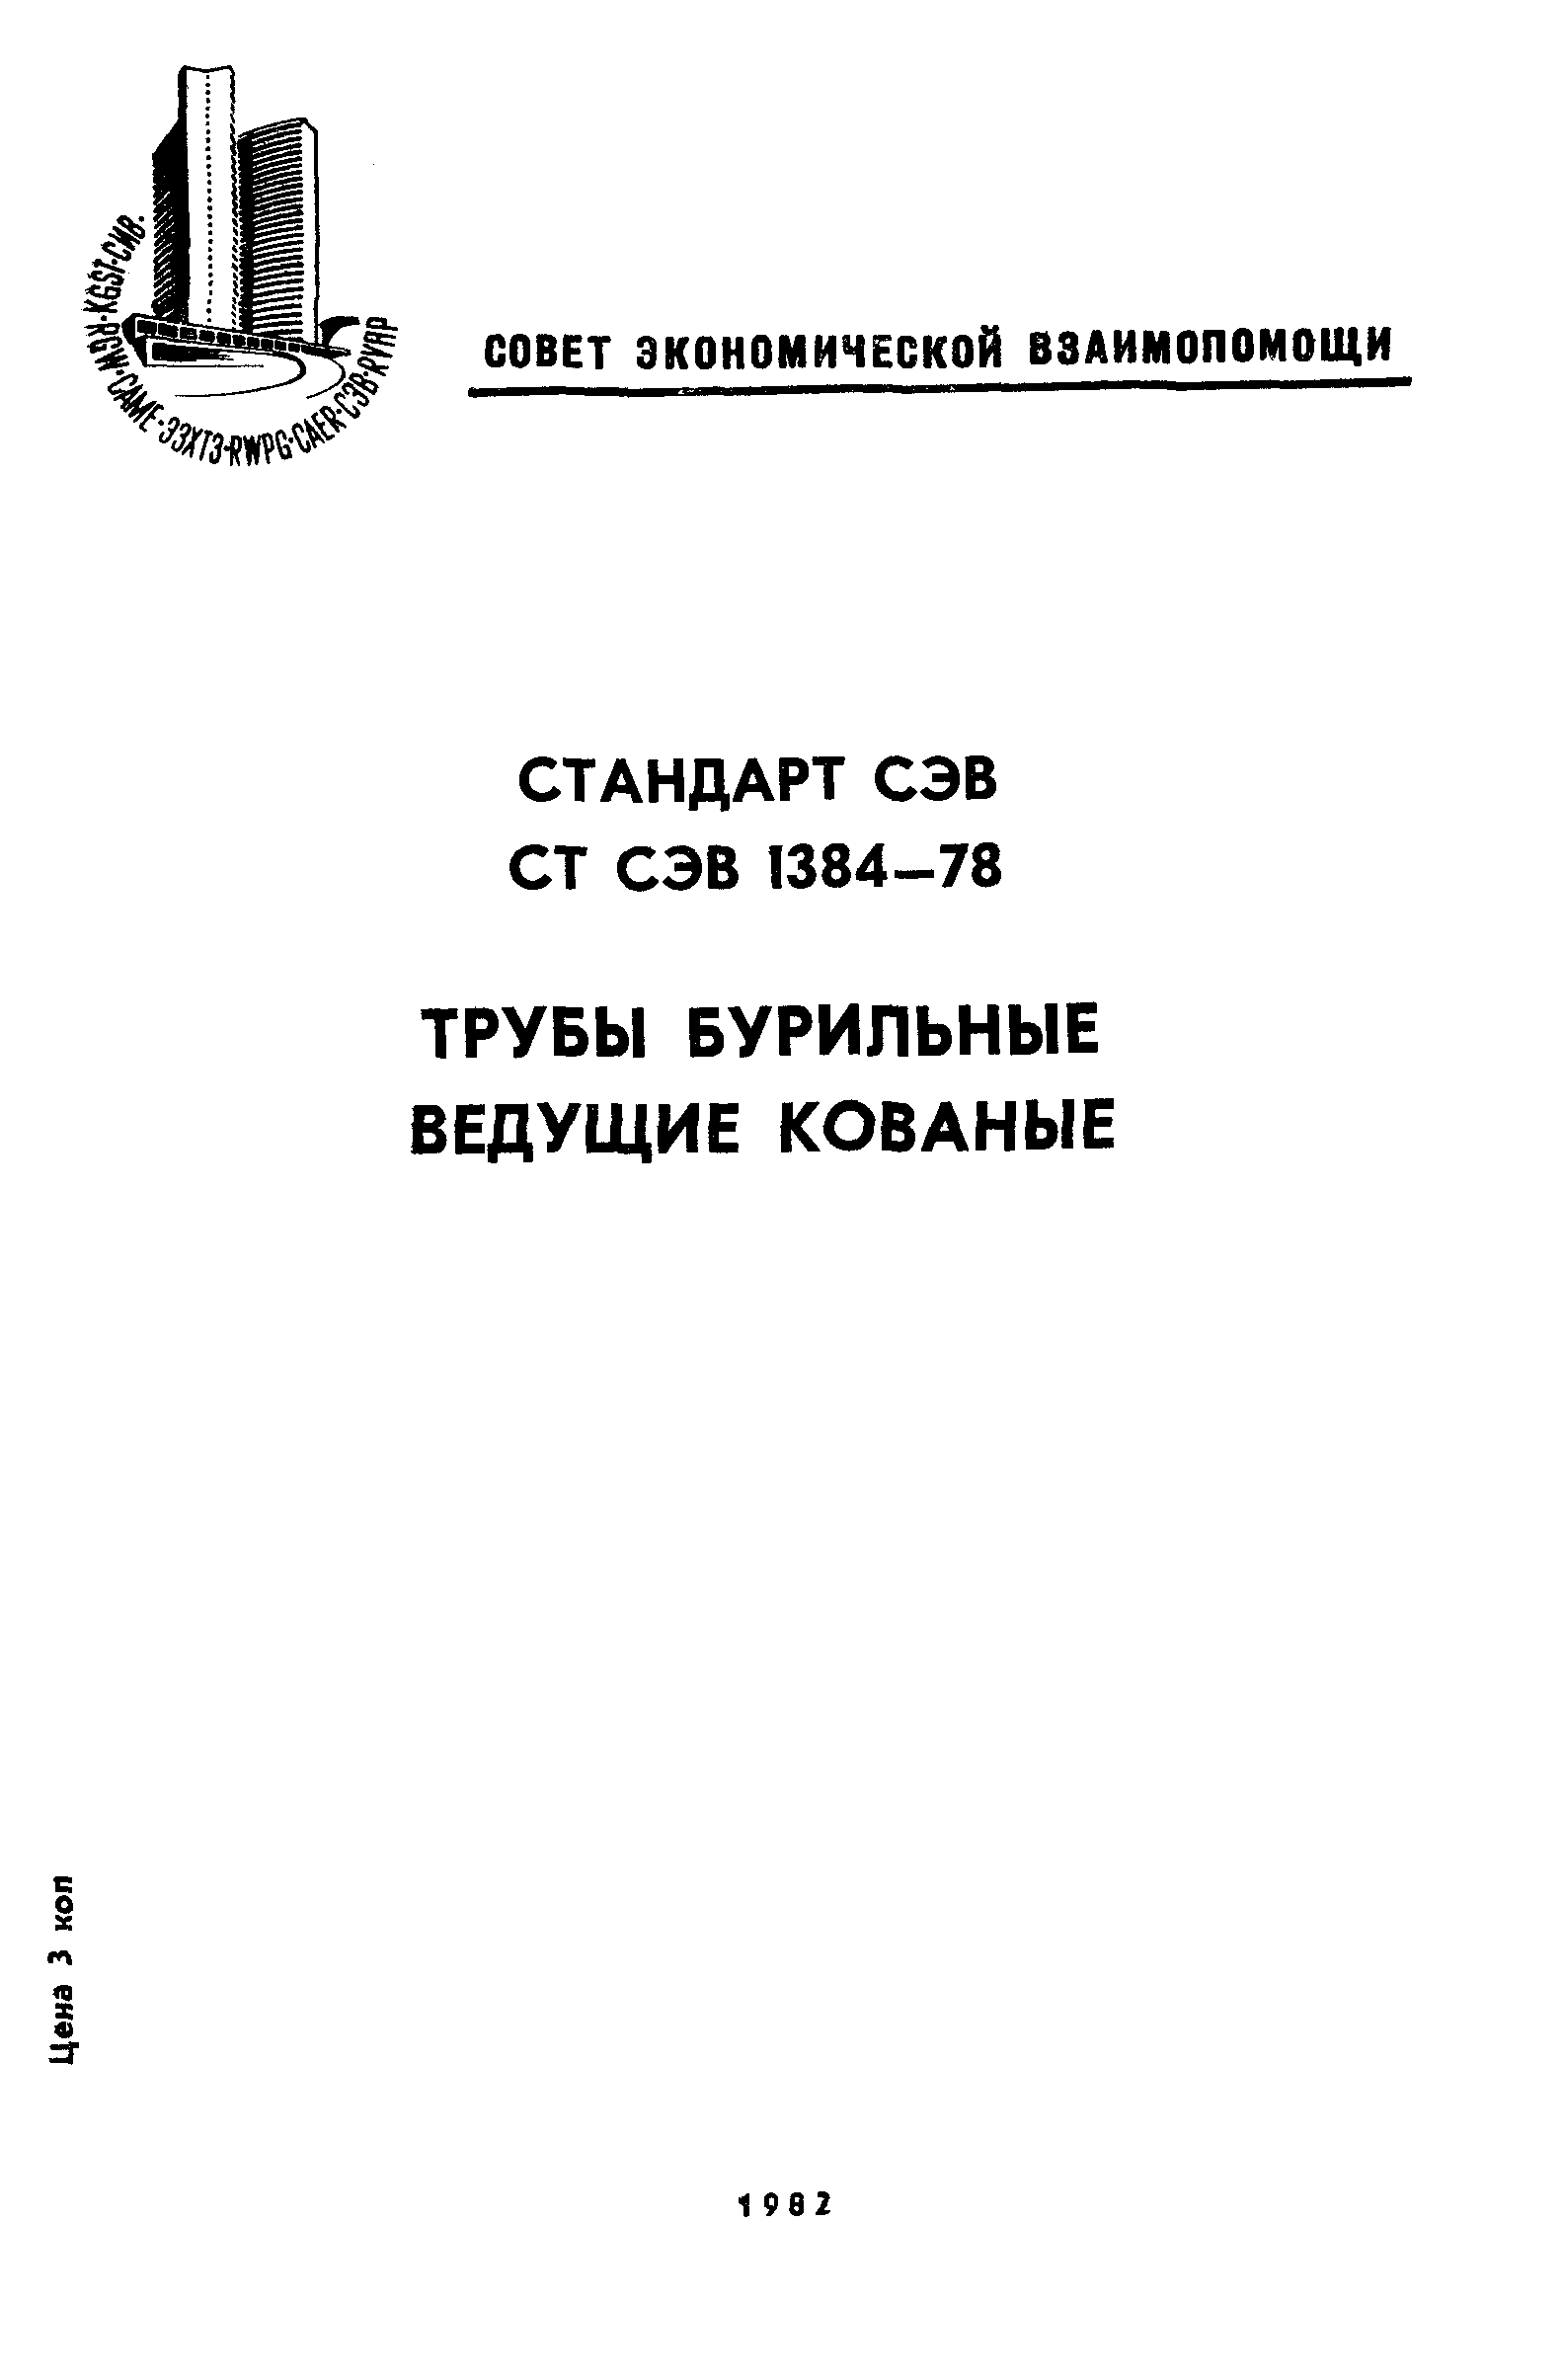 СТ СЭВ 1384-78